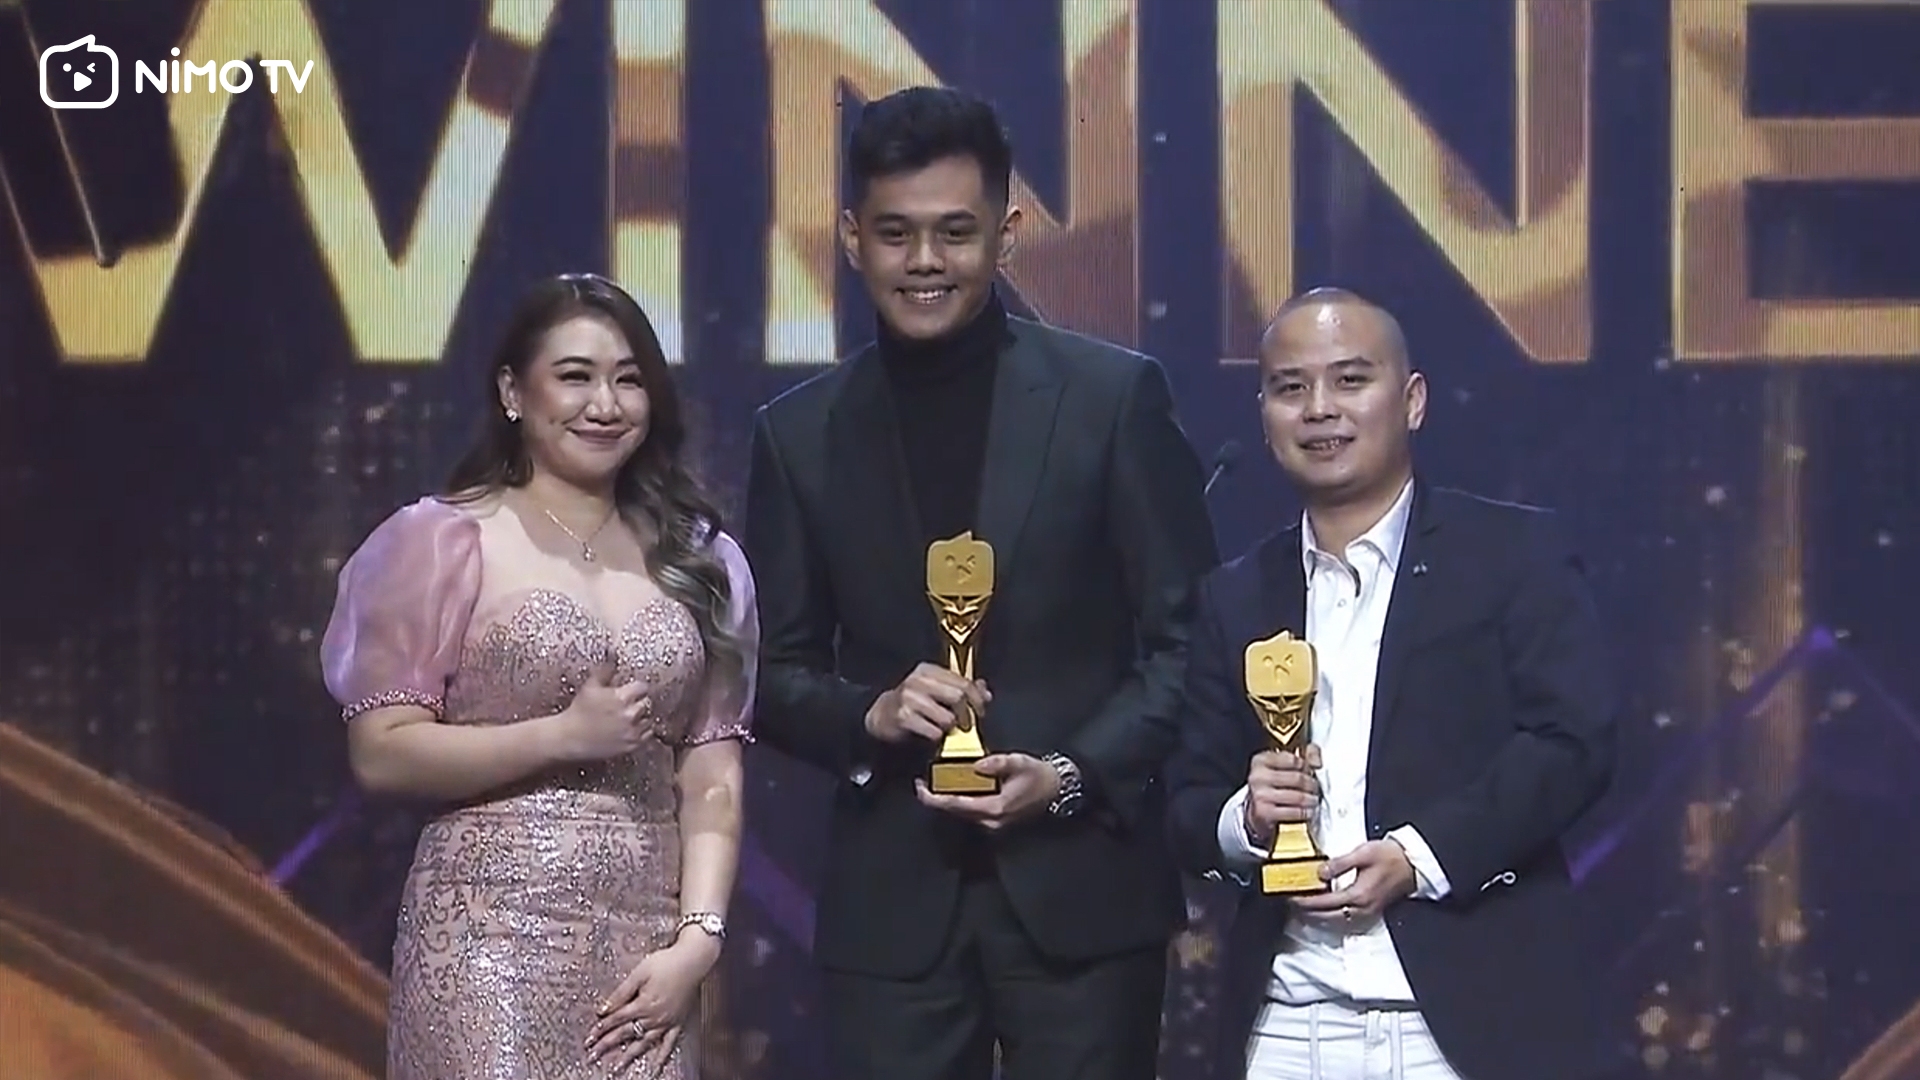 Perayaan Malam Puncak Nimo TV Bertabur Bintang serta Streamer dan Konten Kreator Terbaik di Indonesia